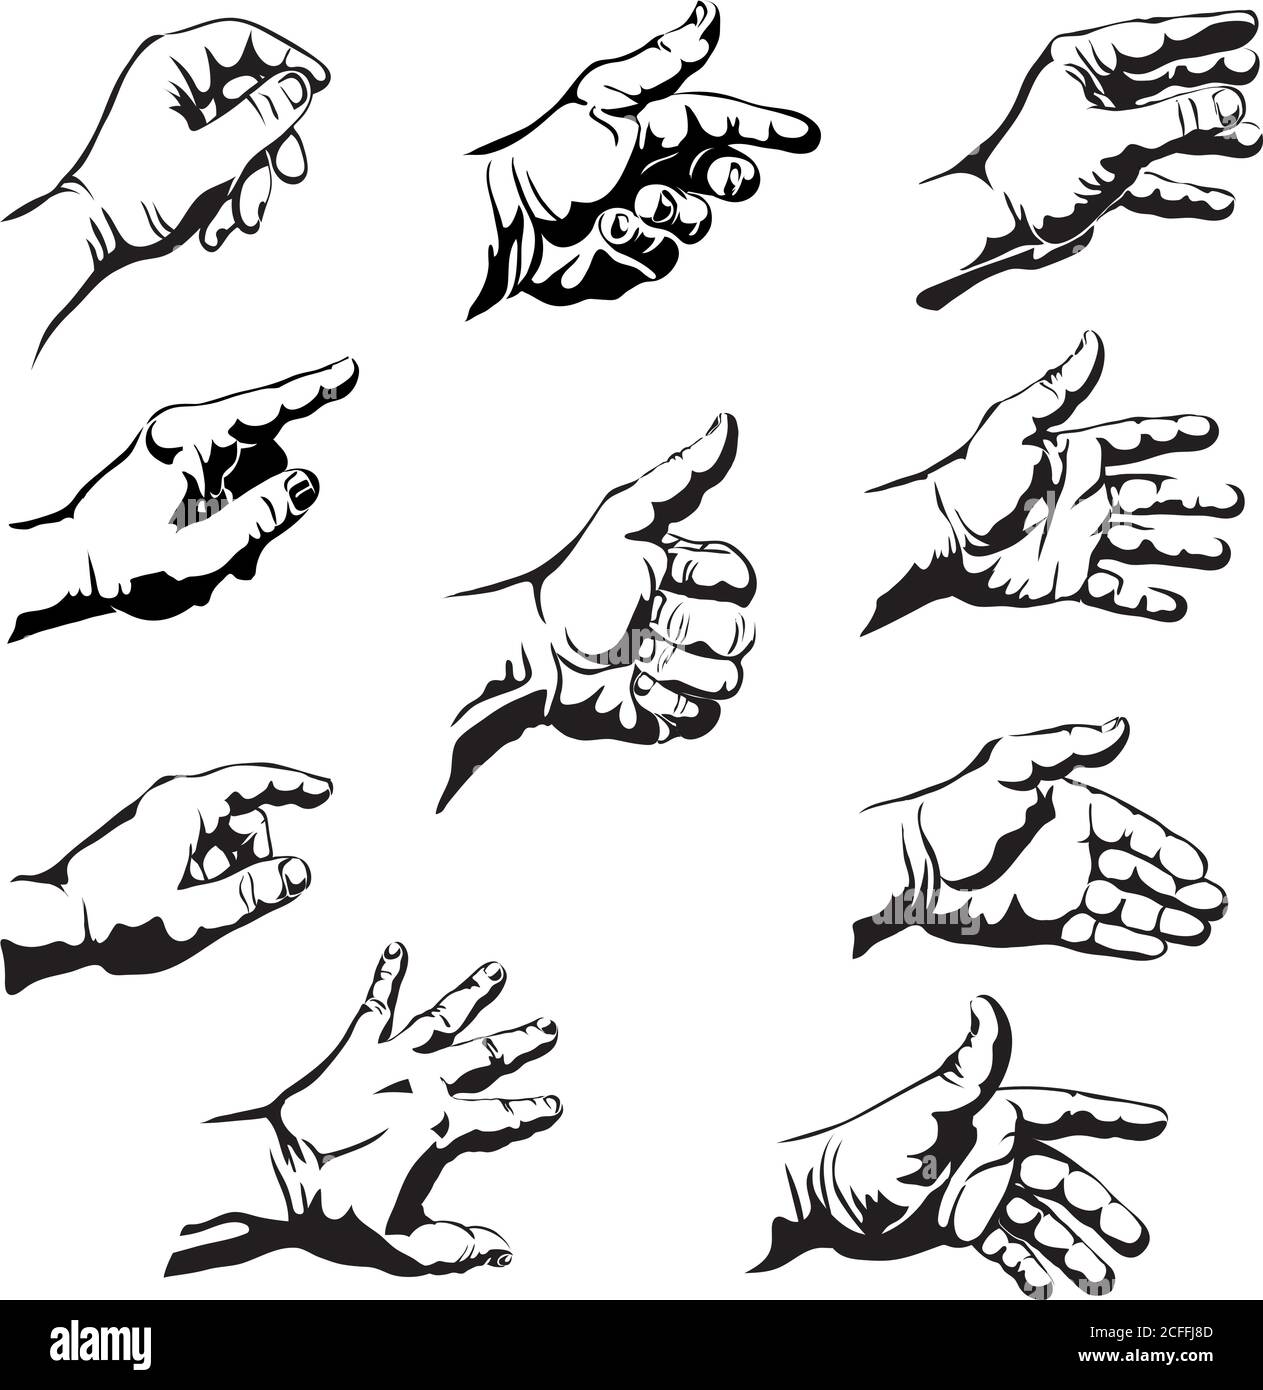 Grafische Zeichnungen von Händen, Hand, Finger, Daumen, Handfläche, Nägel, Fingernägel, Geste, Vektor, Silhouette, Zeichnung, dekorativ, ornamental; Bild Stock Vektor